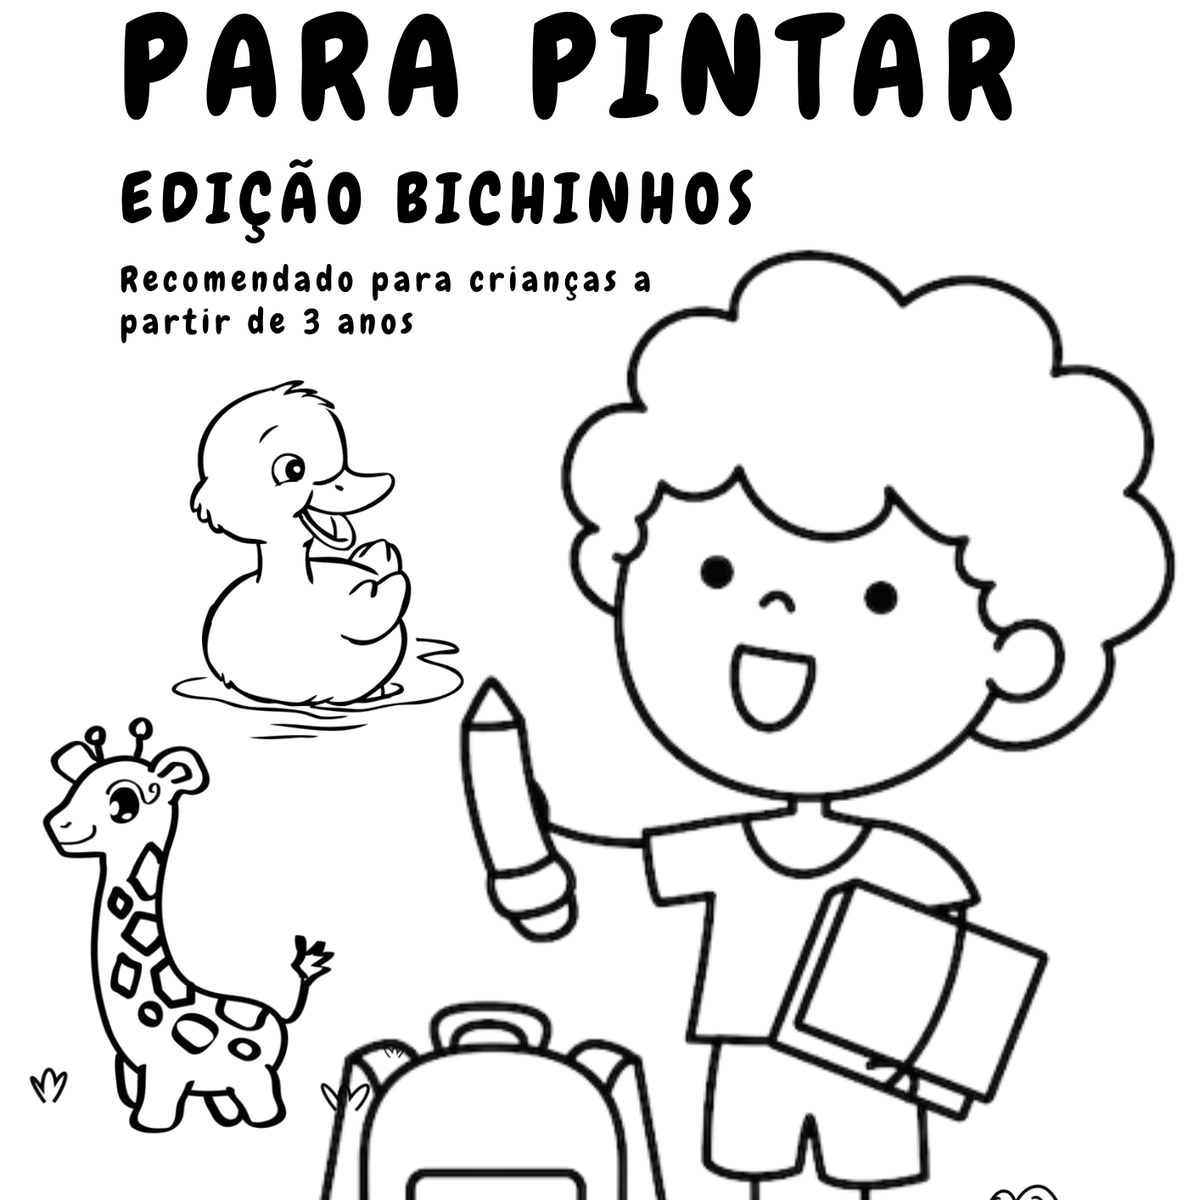 30 Desenhos para Pintar - PDF ou Impresso